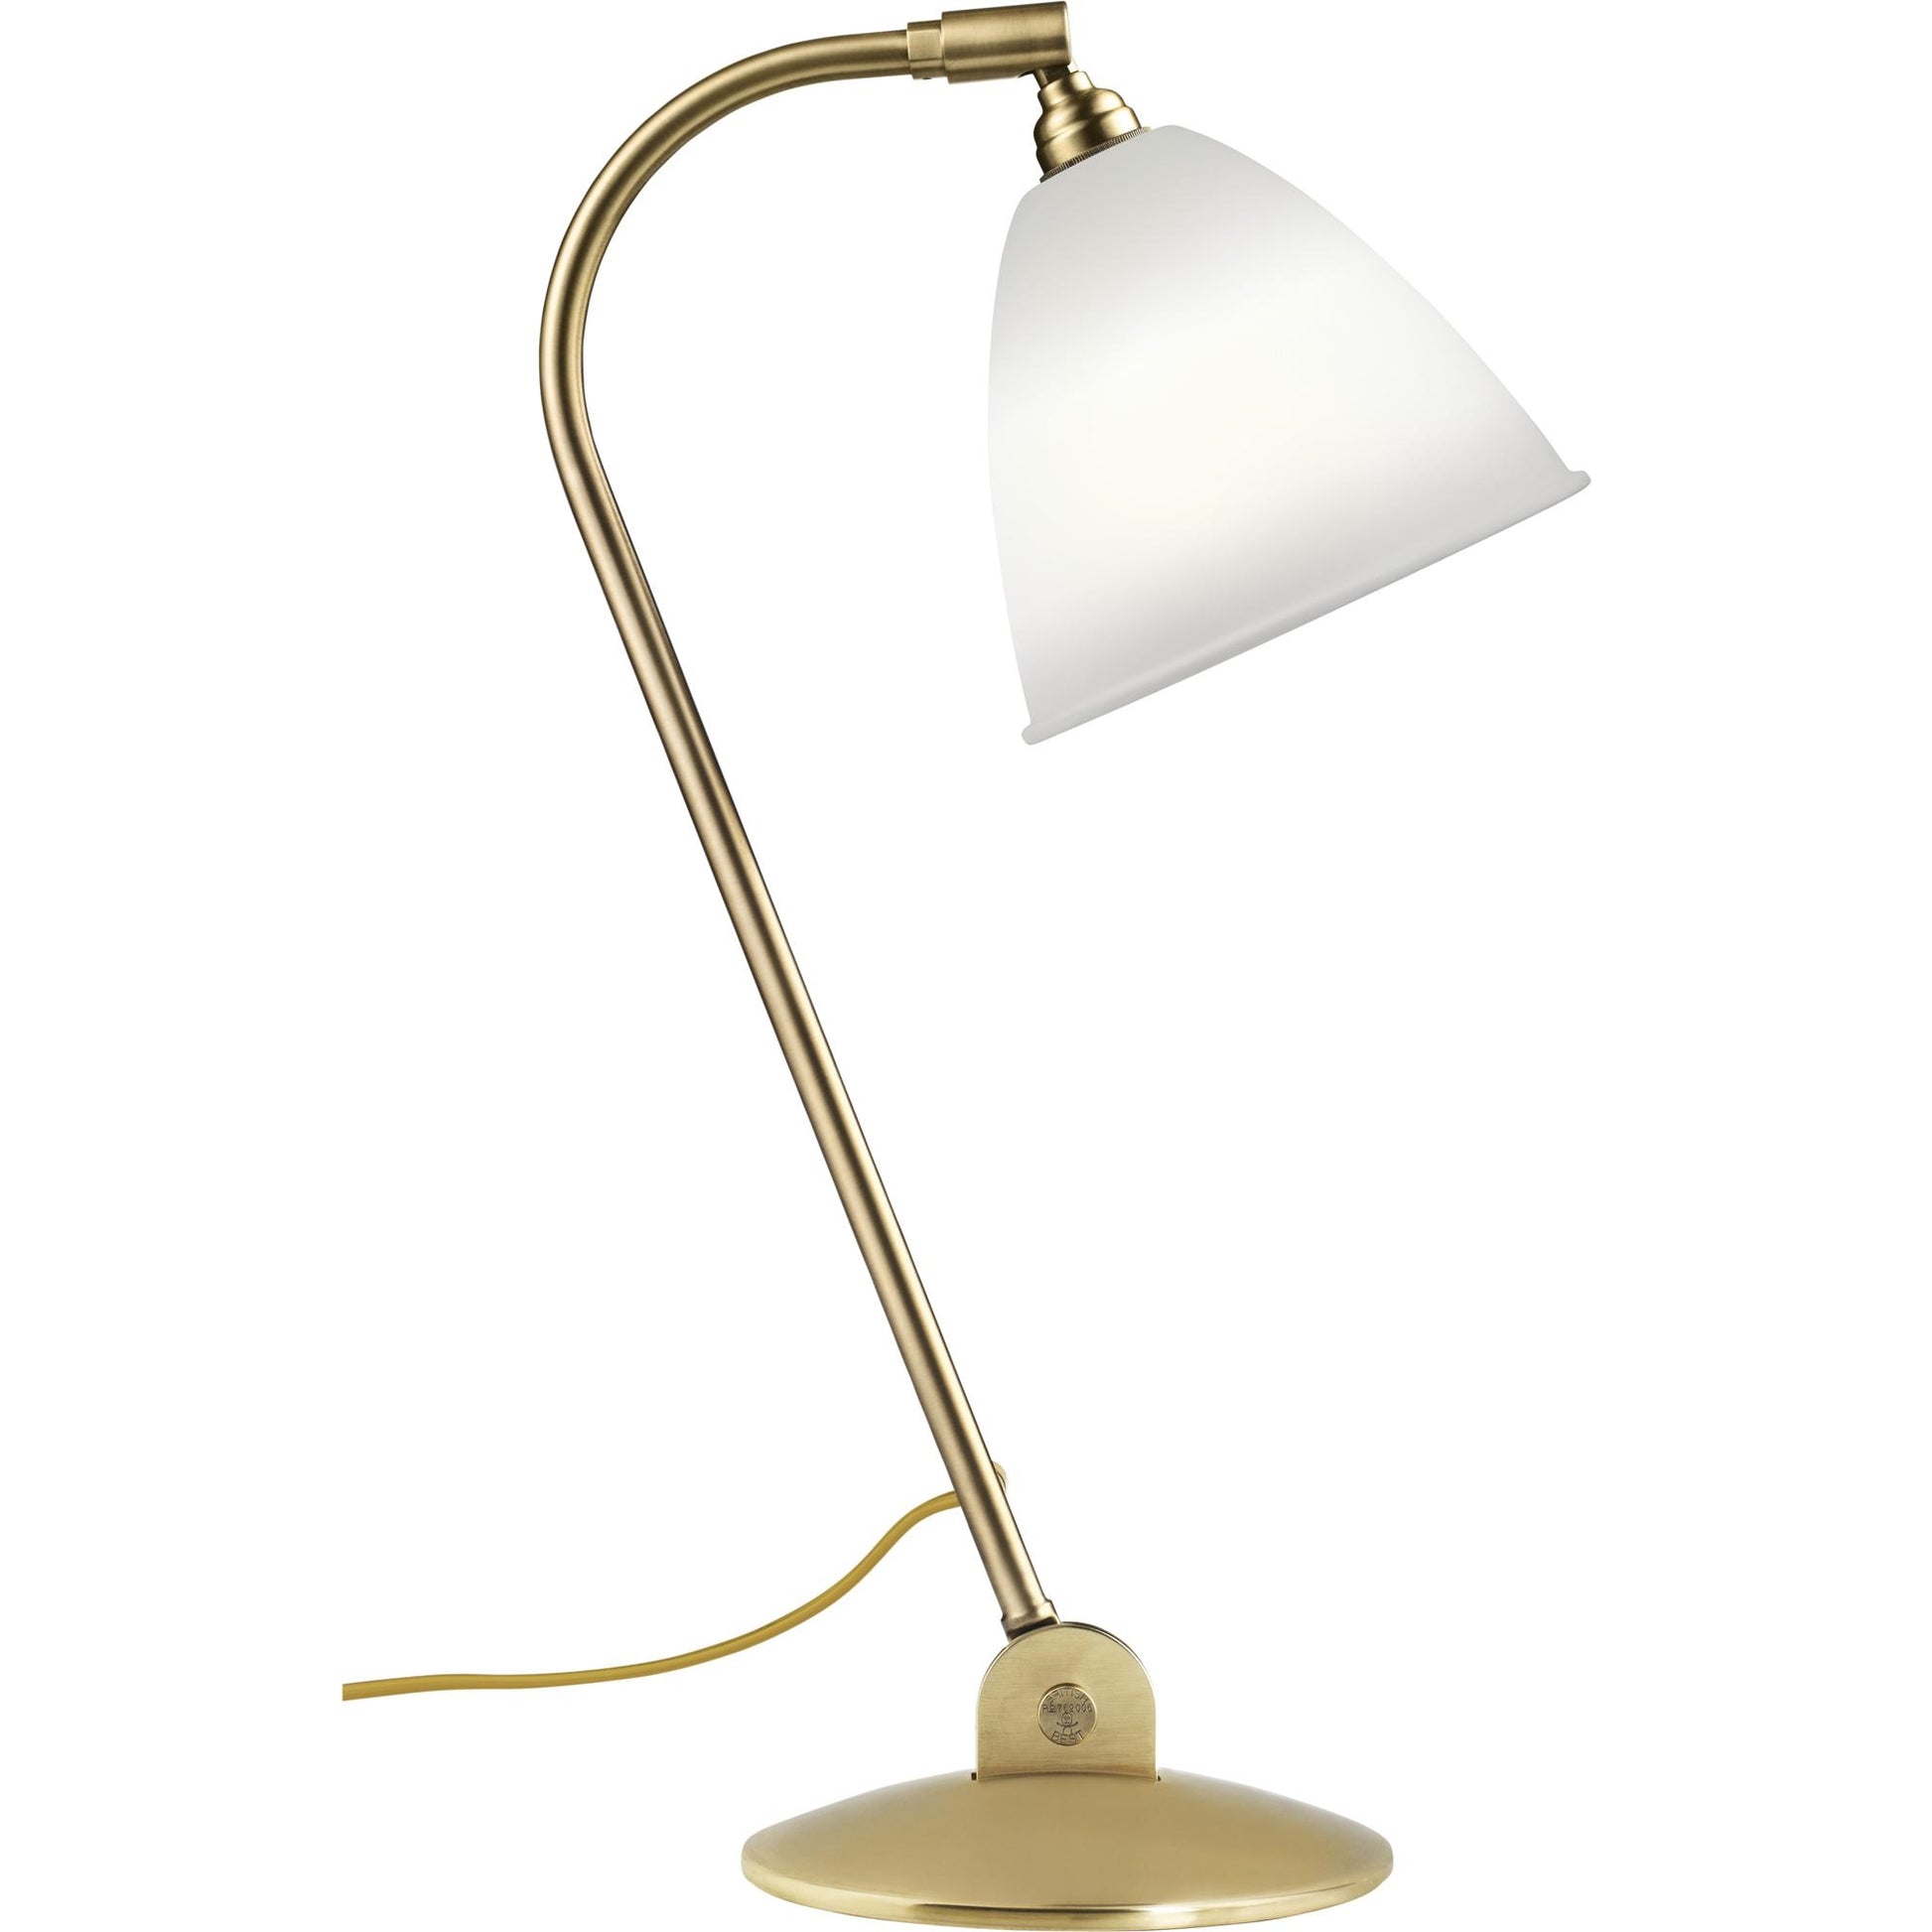 Bestlite BL2 Table Lamp by GUBI #Brass / Porcelain